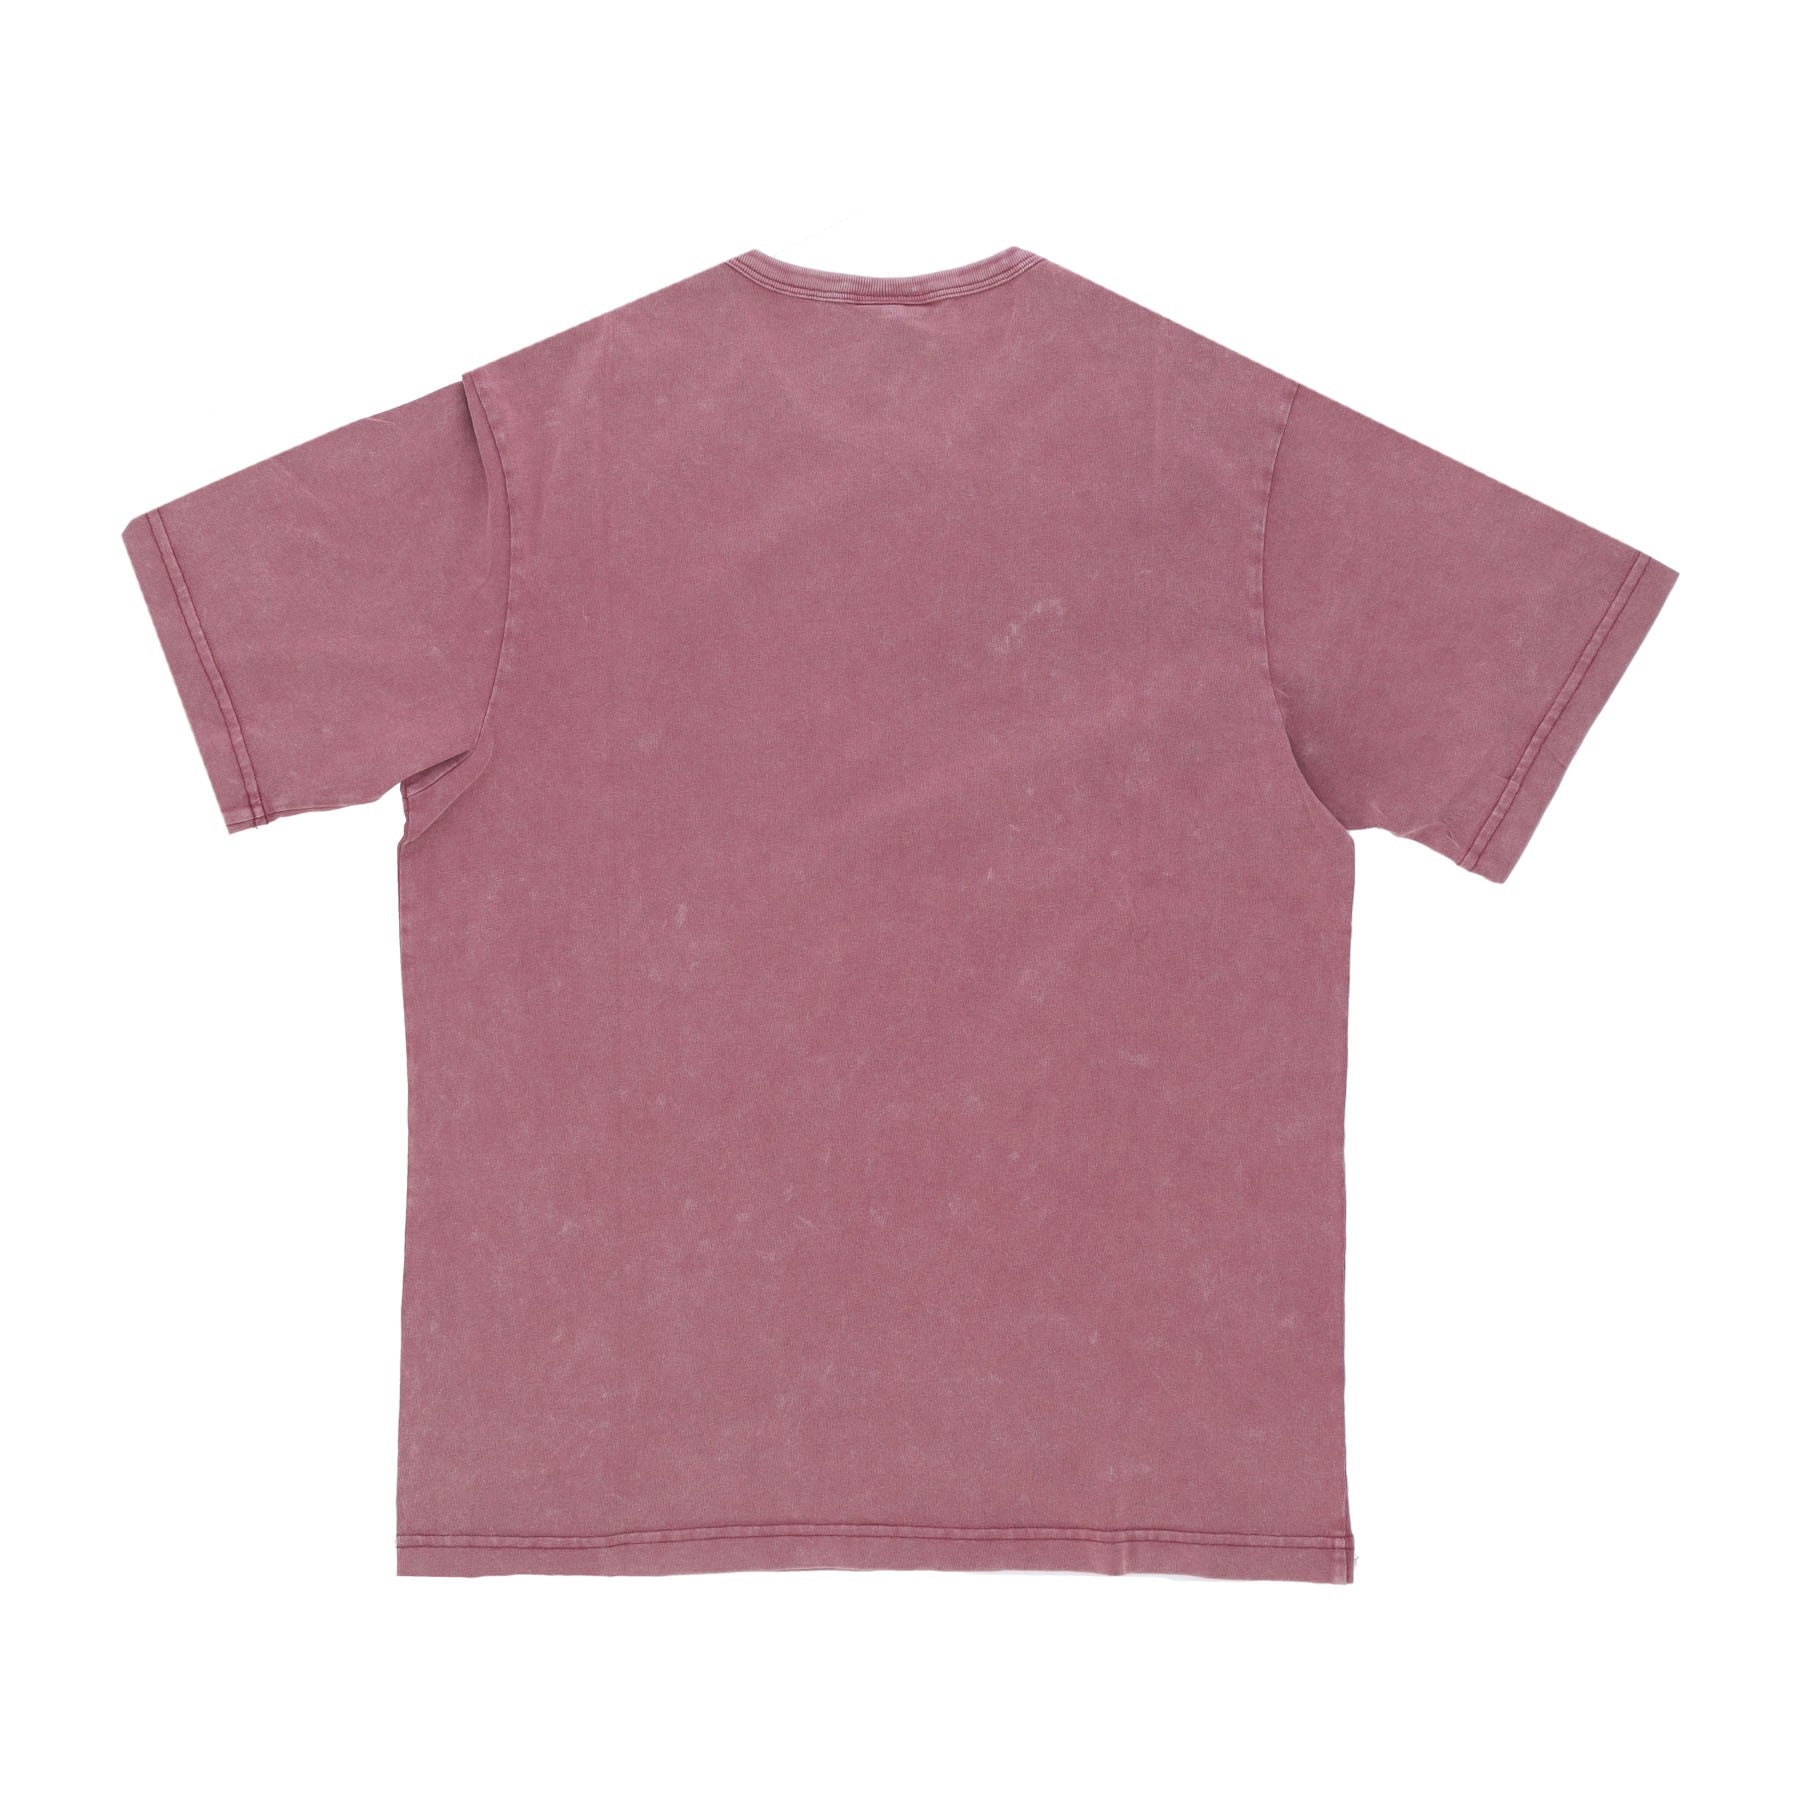 Acid Wash 20/1 Tee Vintage Rose Men's T-Shirt